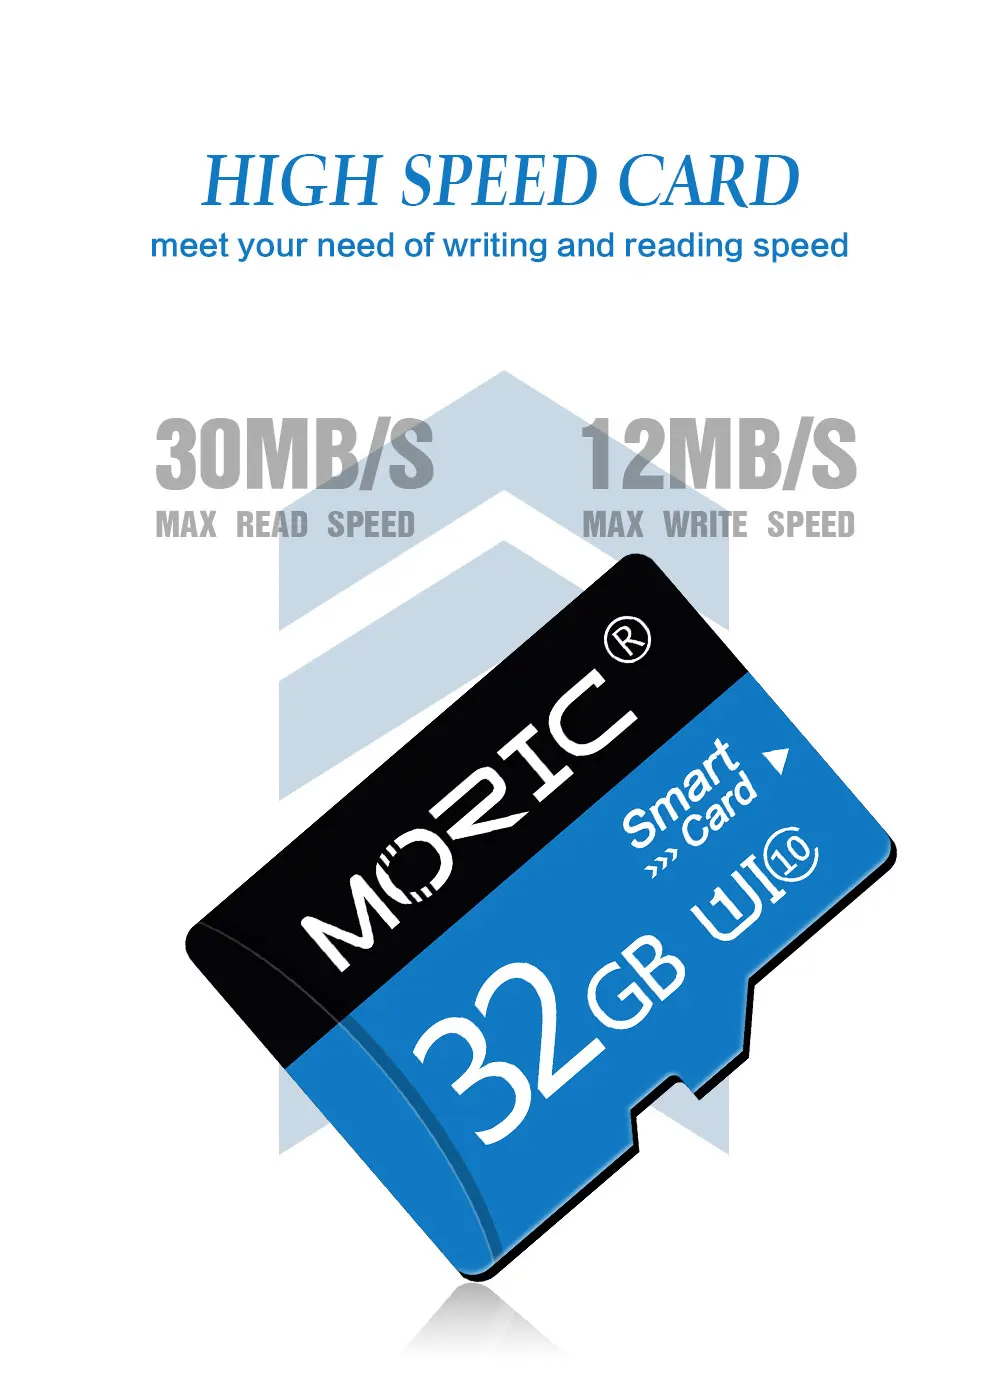 כרטיס זיכרון Micro SD מדגם Moric כולל מתאם בחינם